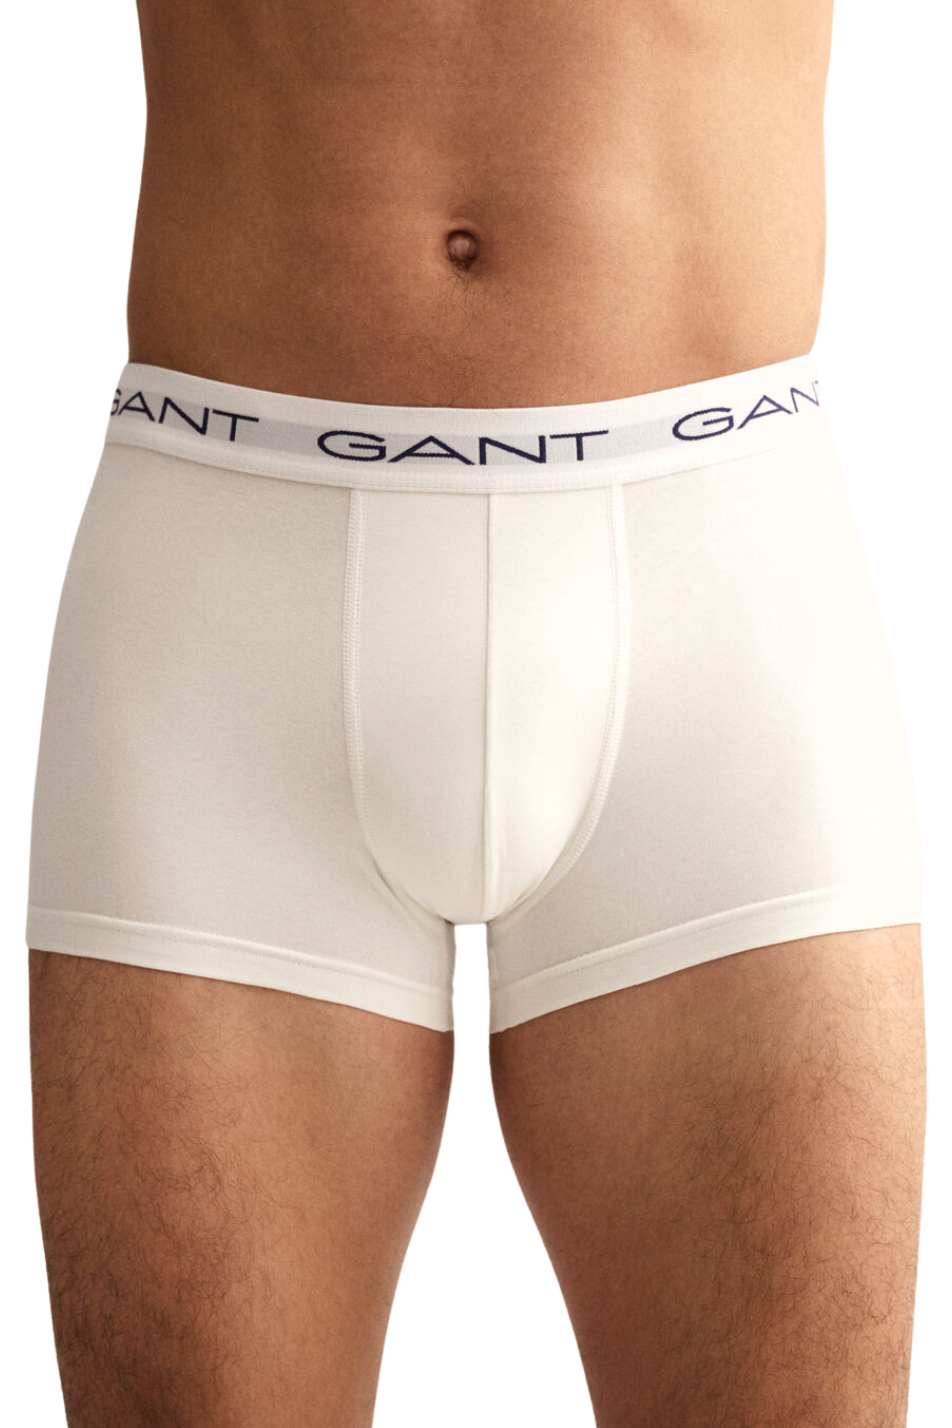 Gant 3 Pack Men's Iconic G Trunk